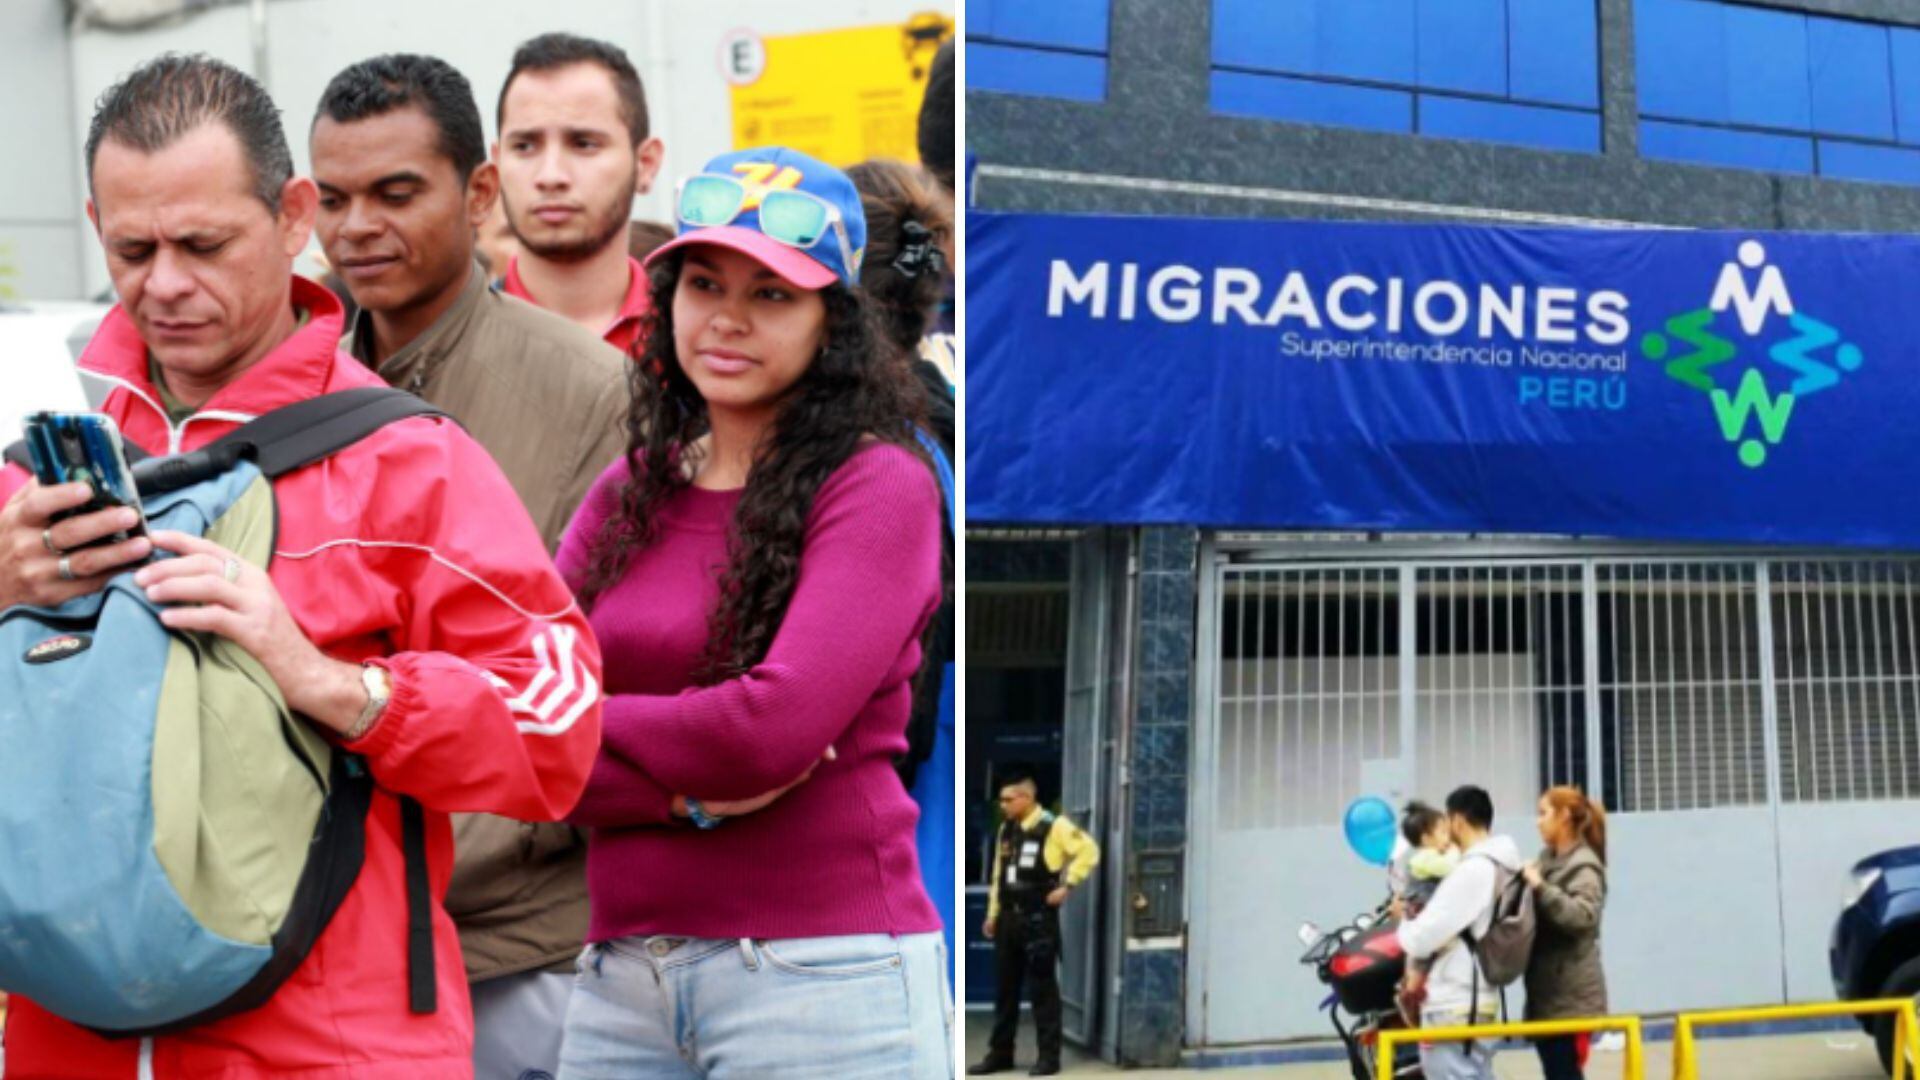 Ciudadanos extranjeros realizan colas en los exteriores de Migraciones, en Perú